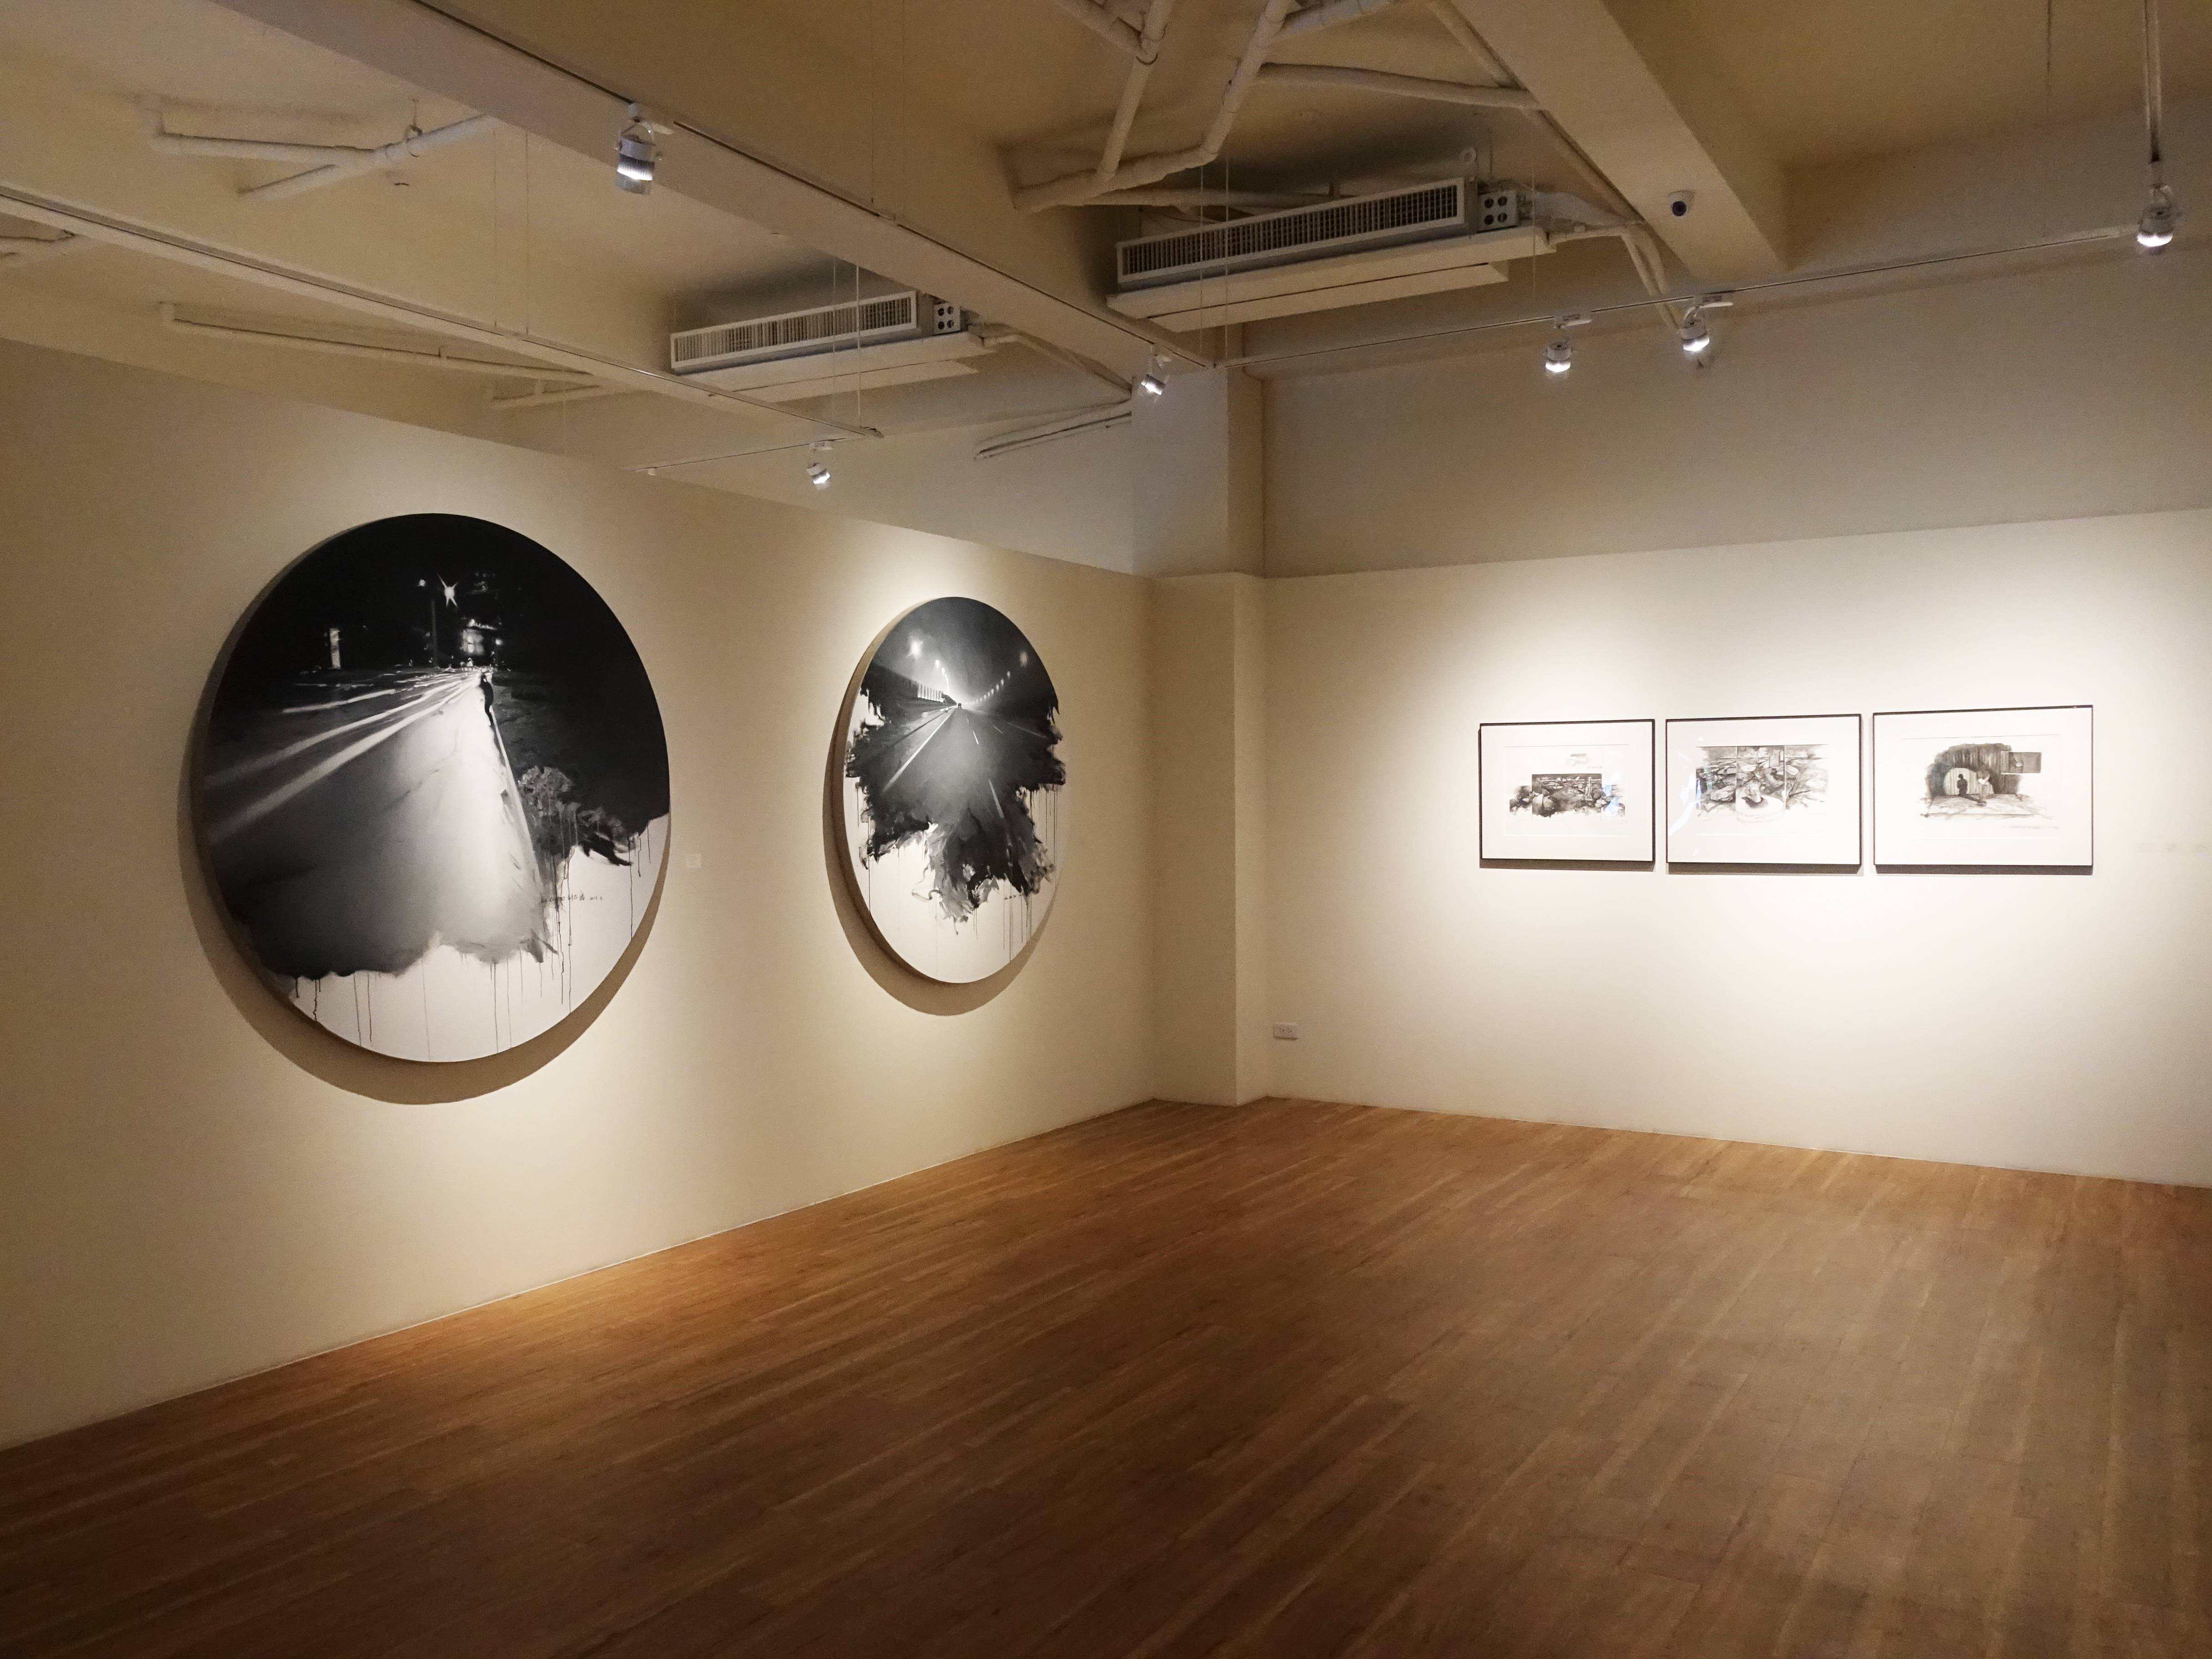 甘樂阿舍美術館劉芯濤個展《盜夢者》展覽空間。